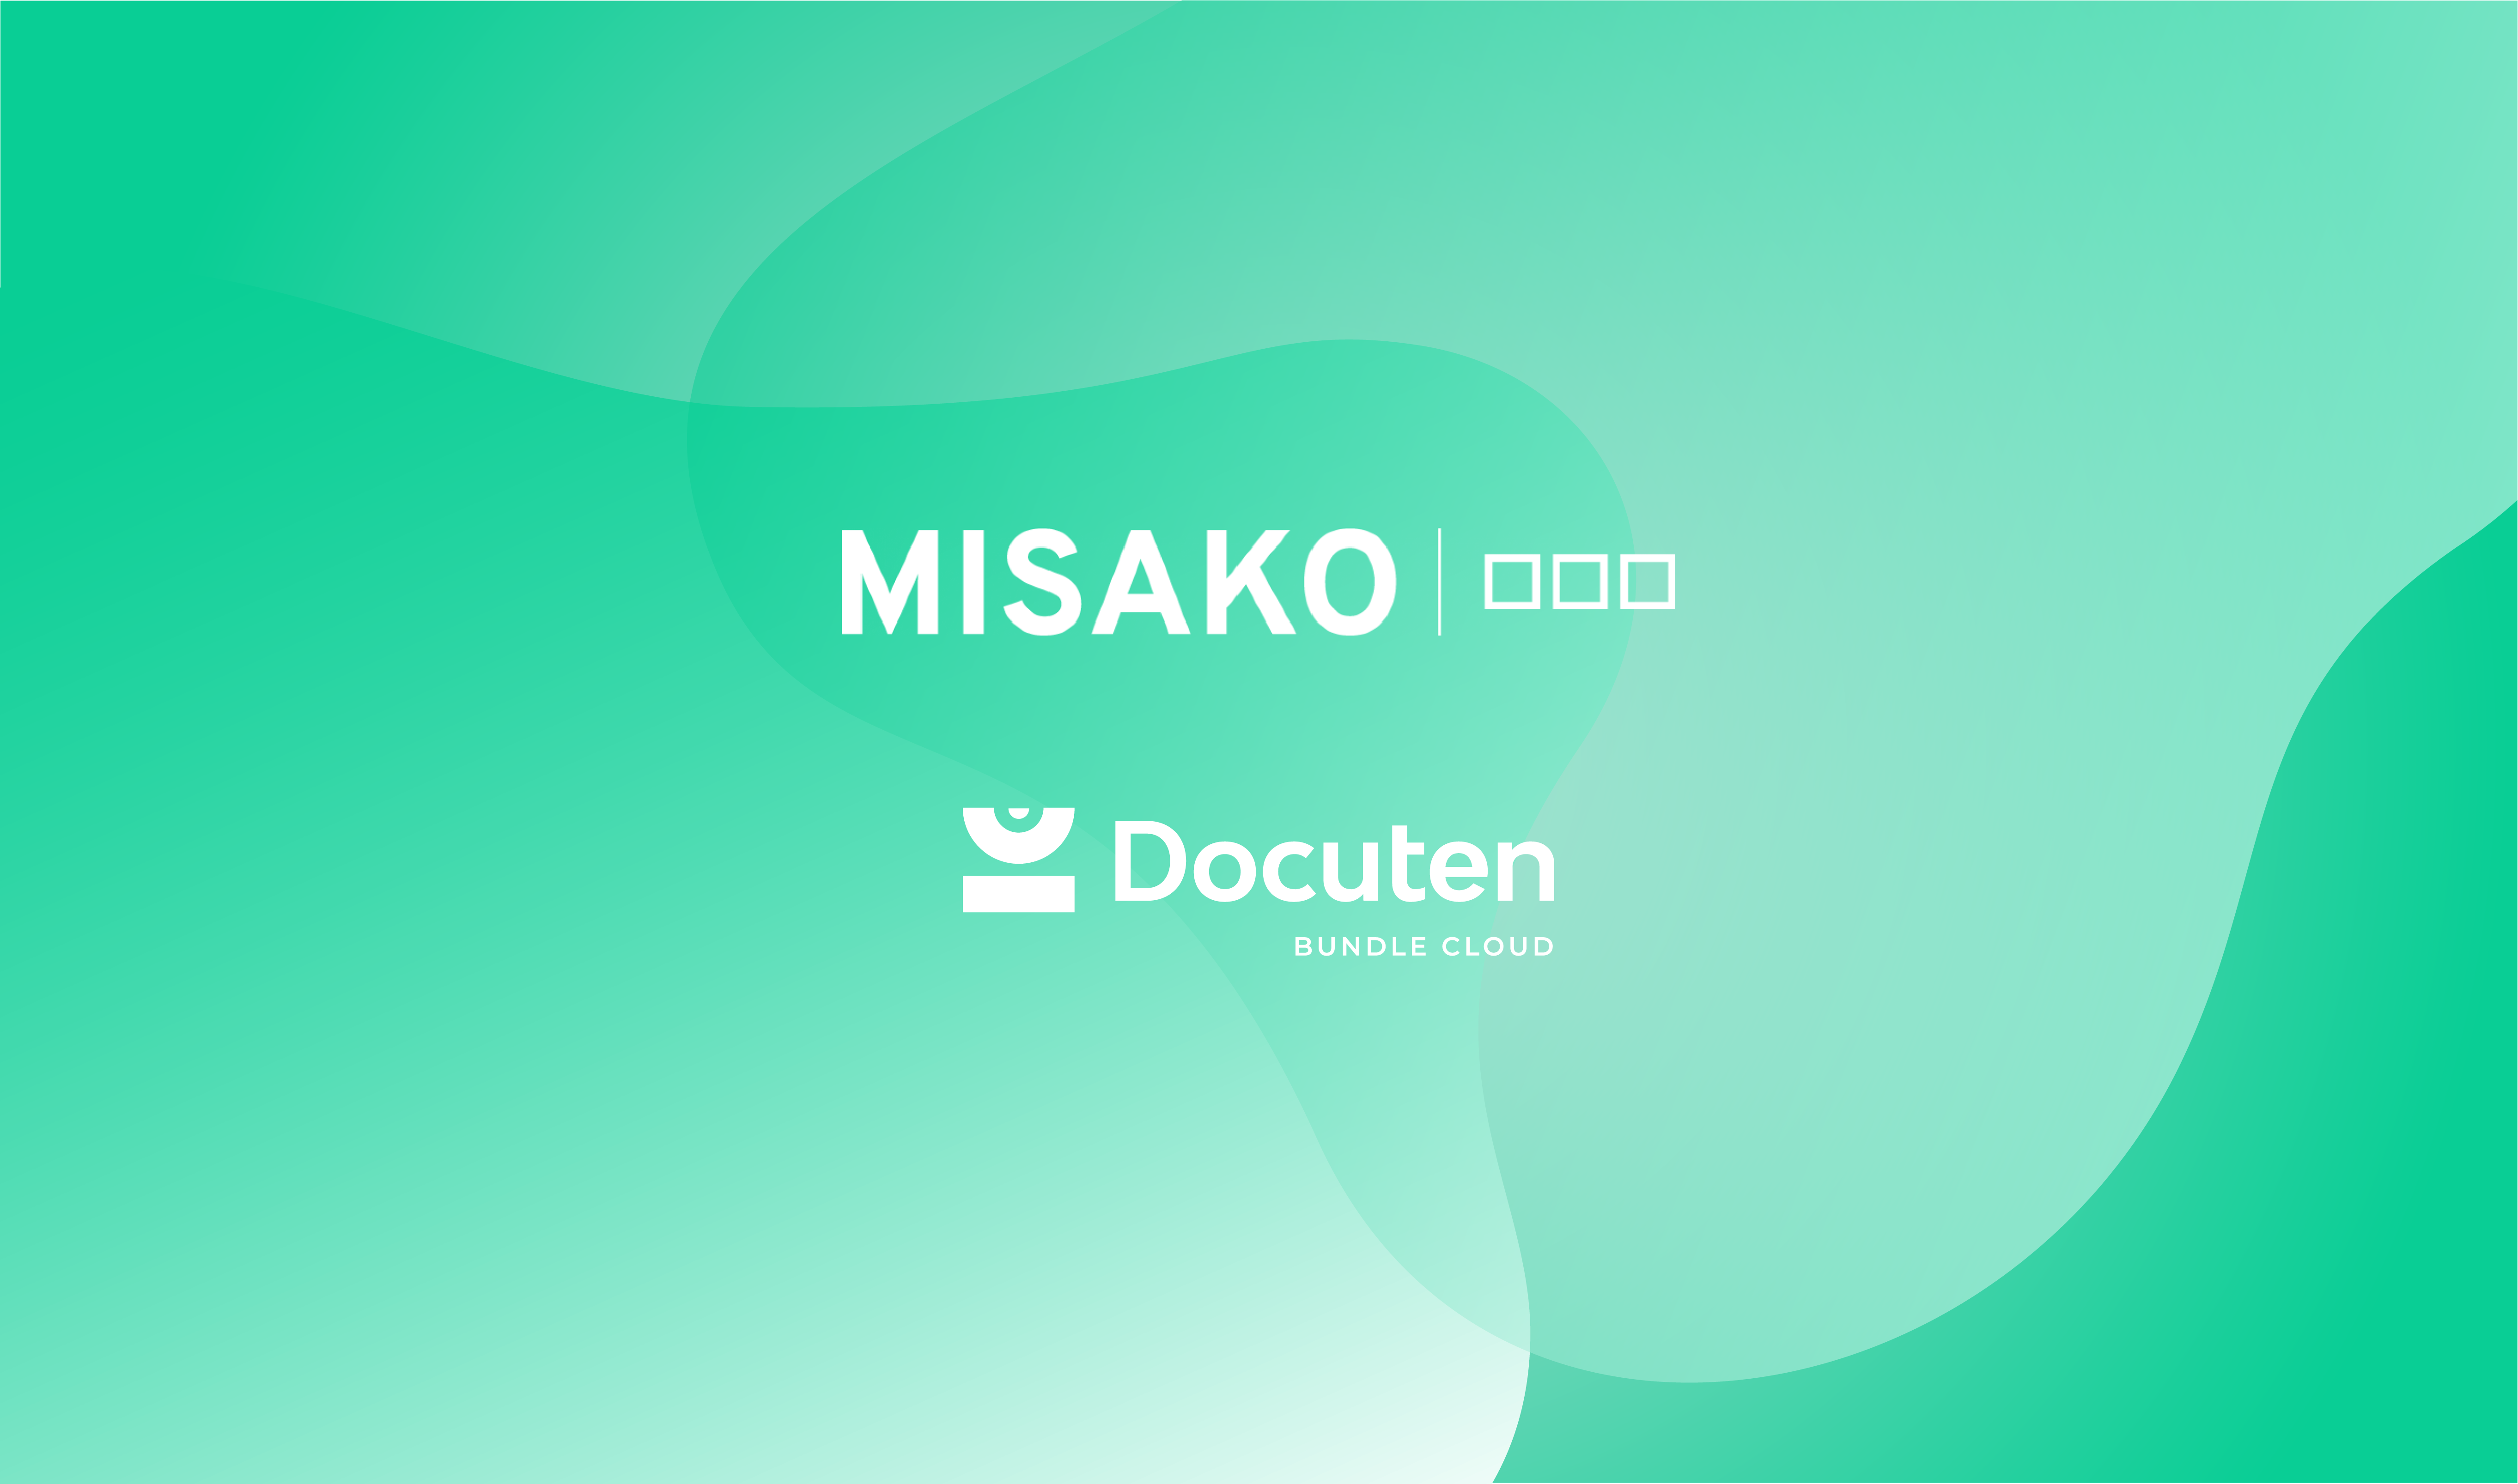 MISAKO confía en Docuten en su digitalización y transformación digital